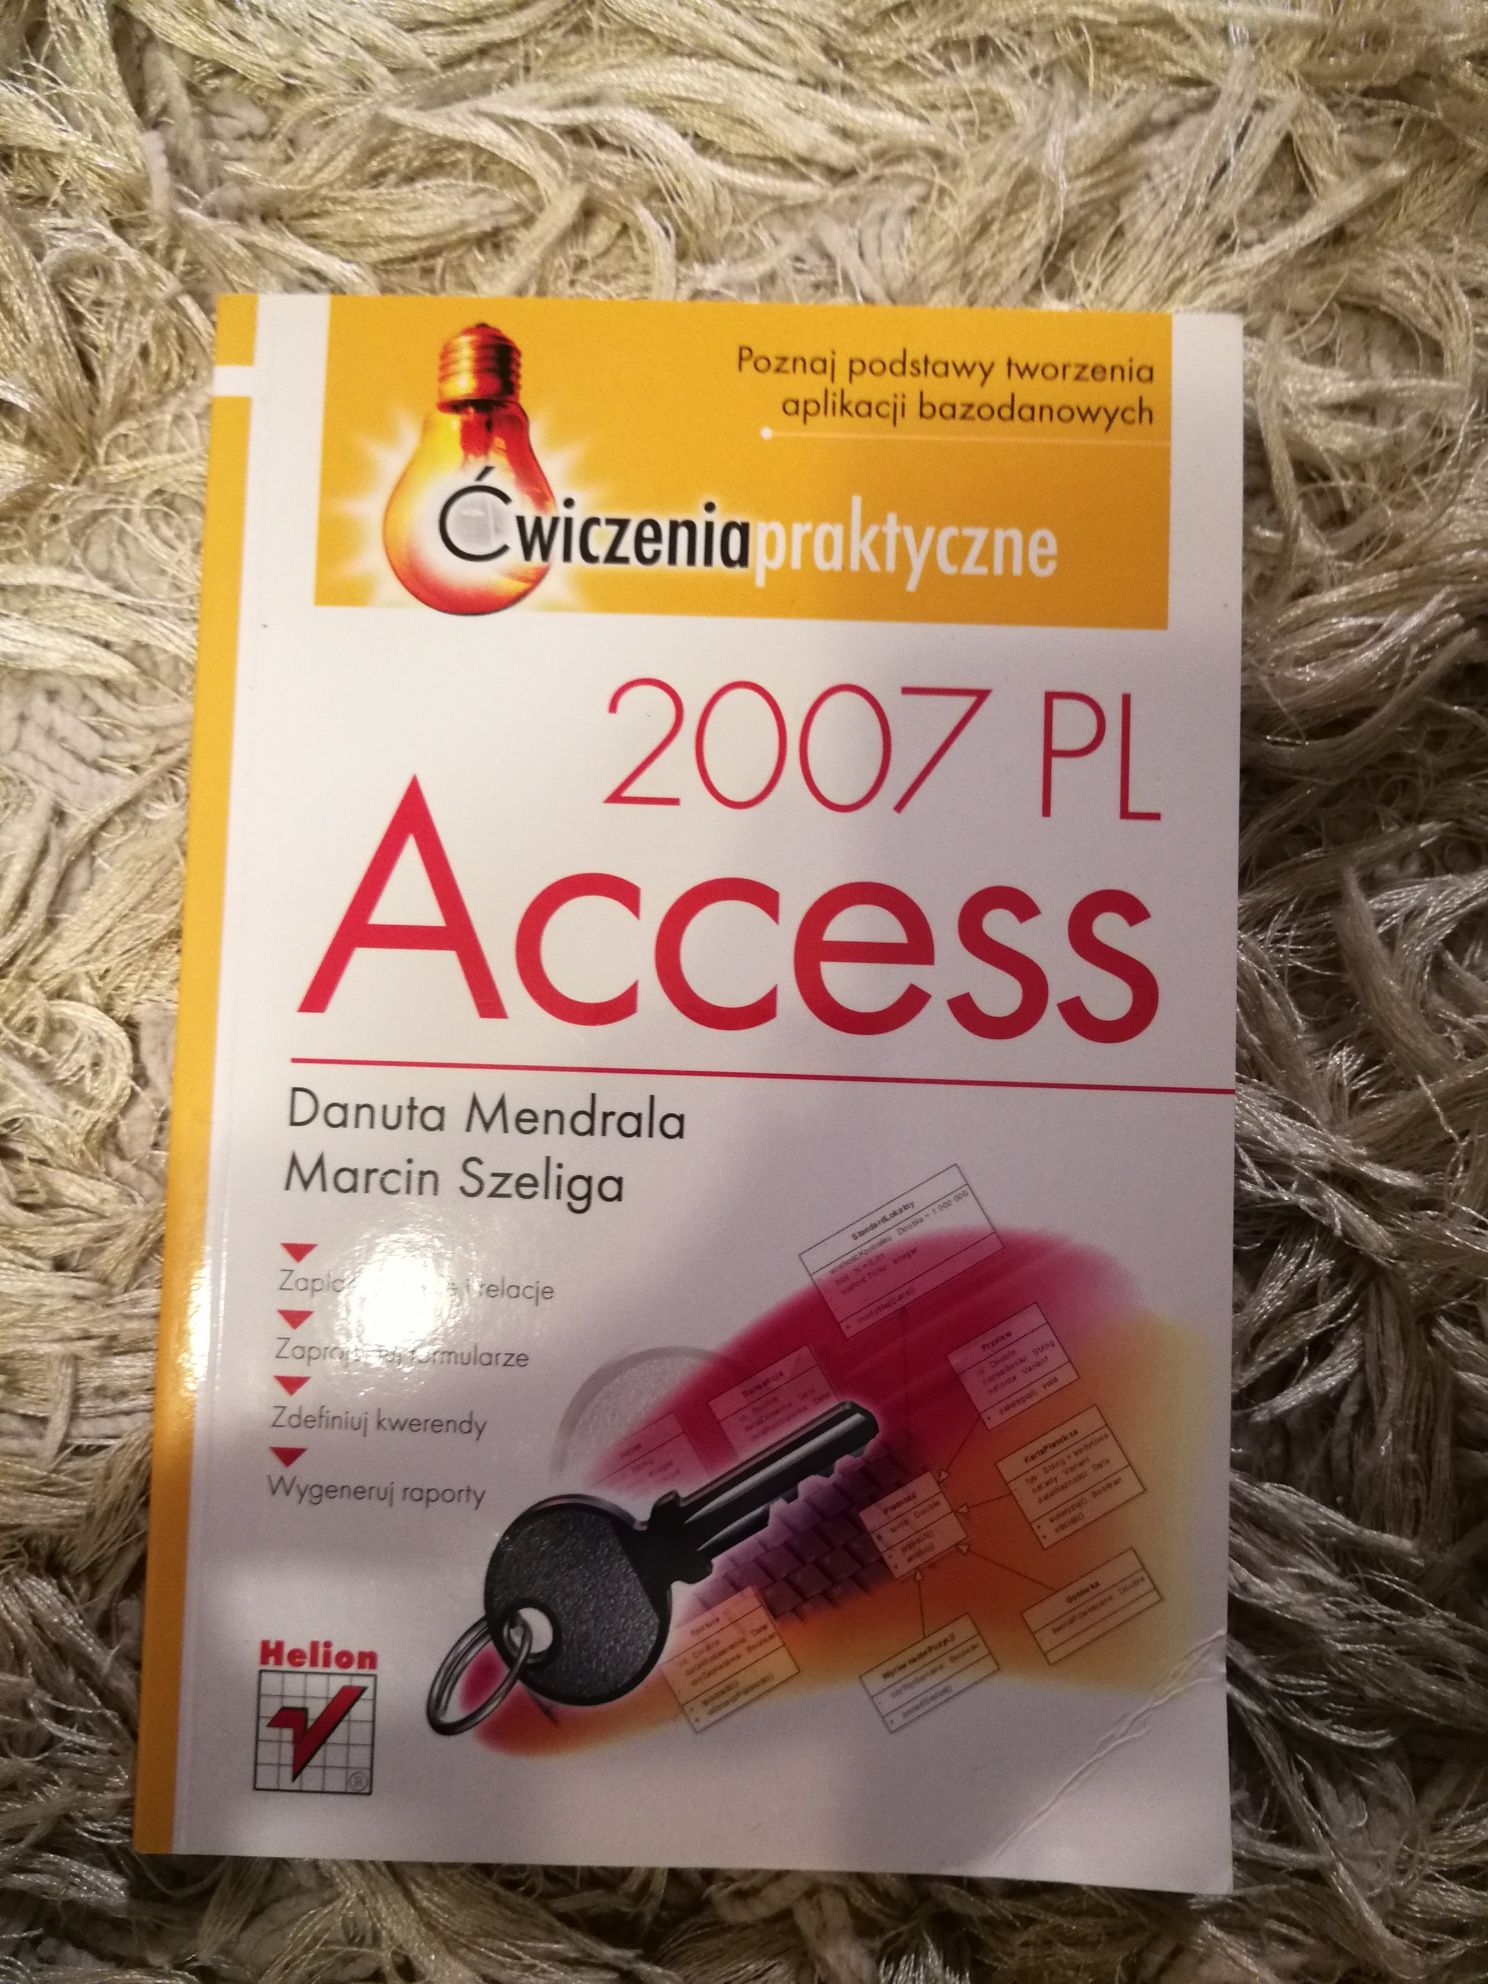 Access 2007 PL. Ćwiczenia praktyczne